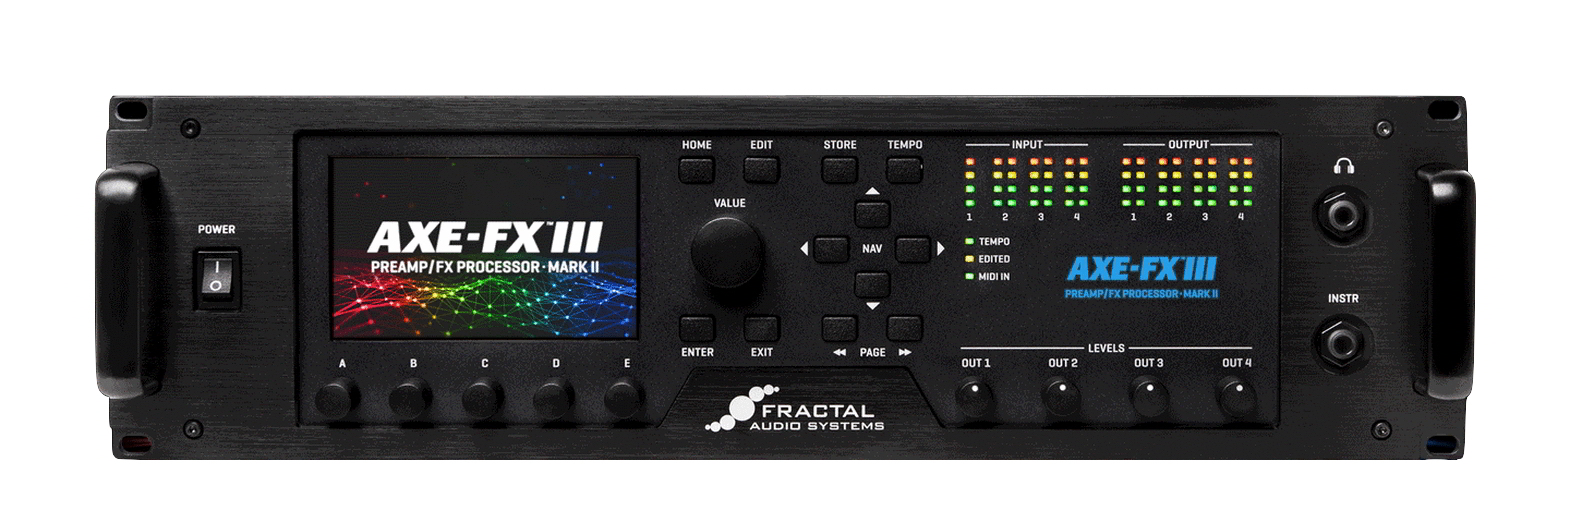 FRACTAL Audio Systems Axeシリーズ アンプシュミレーターAxe-Fx III